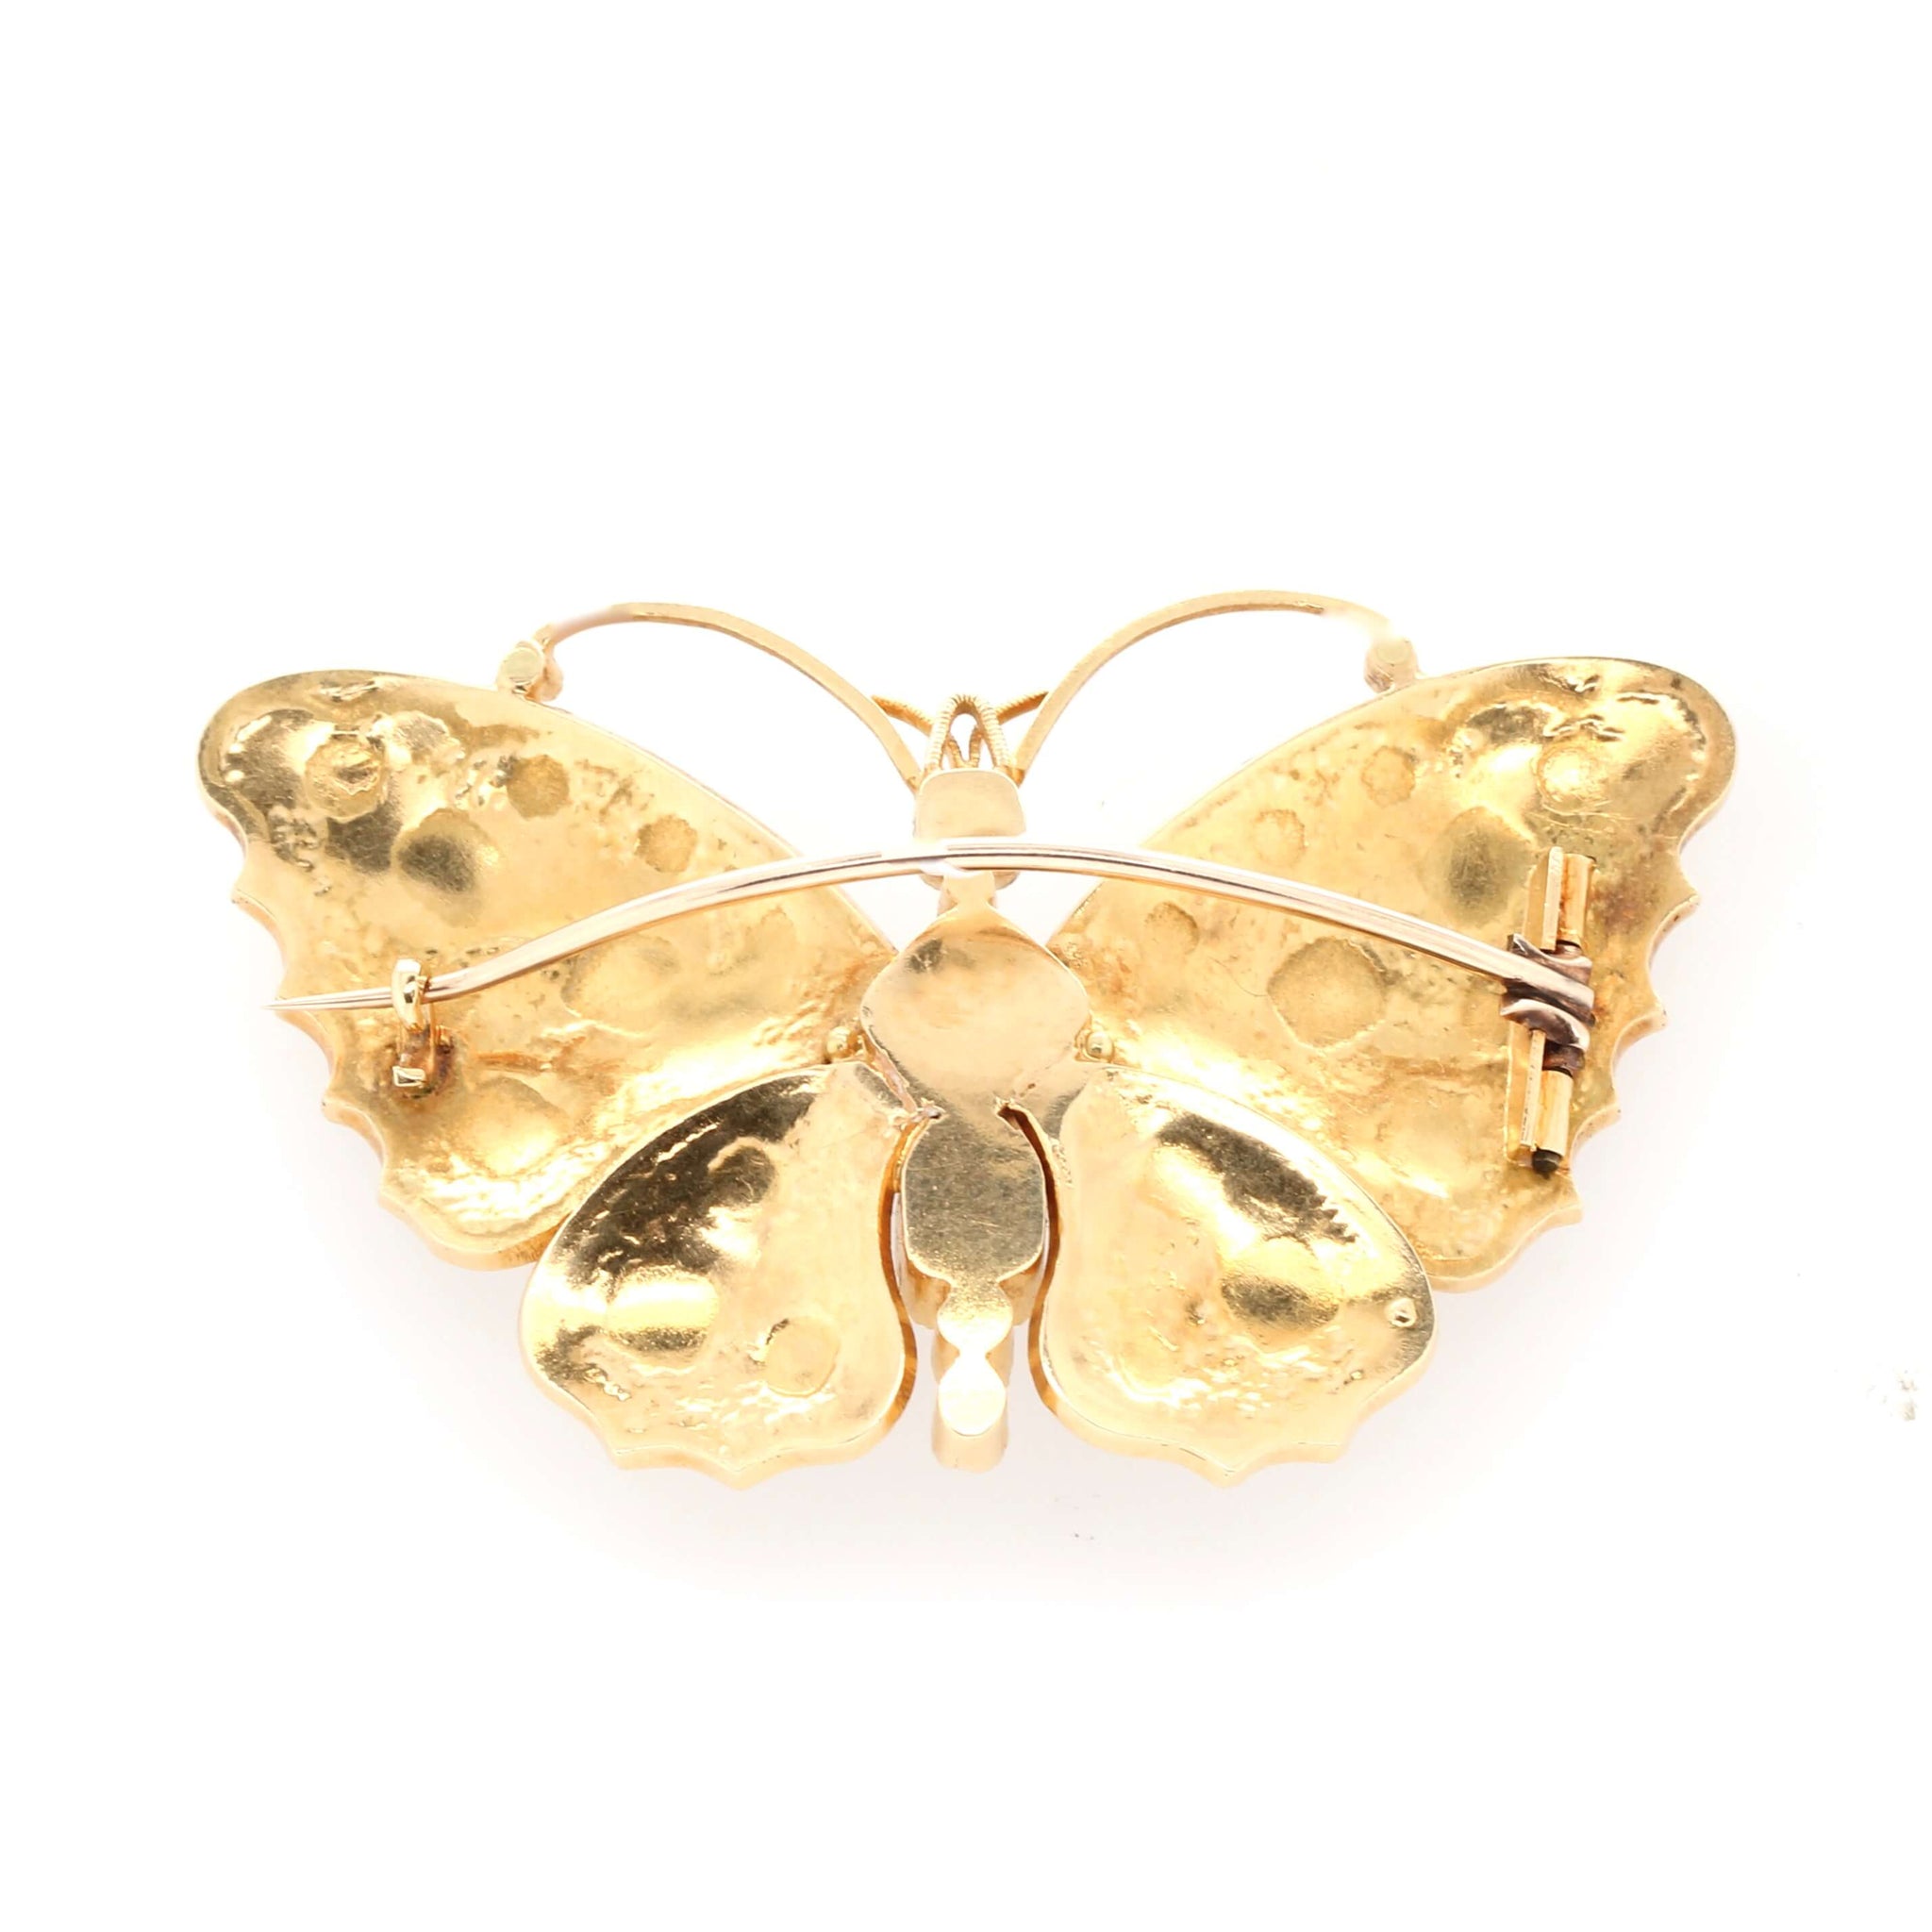 Victorian Butterfly Brooch